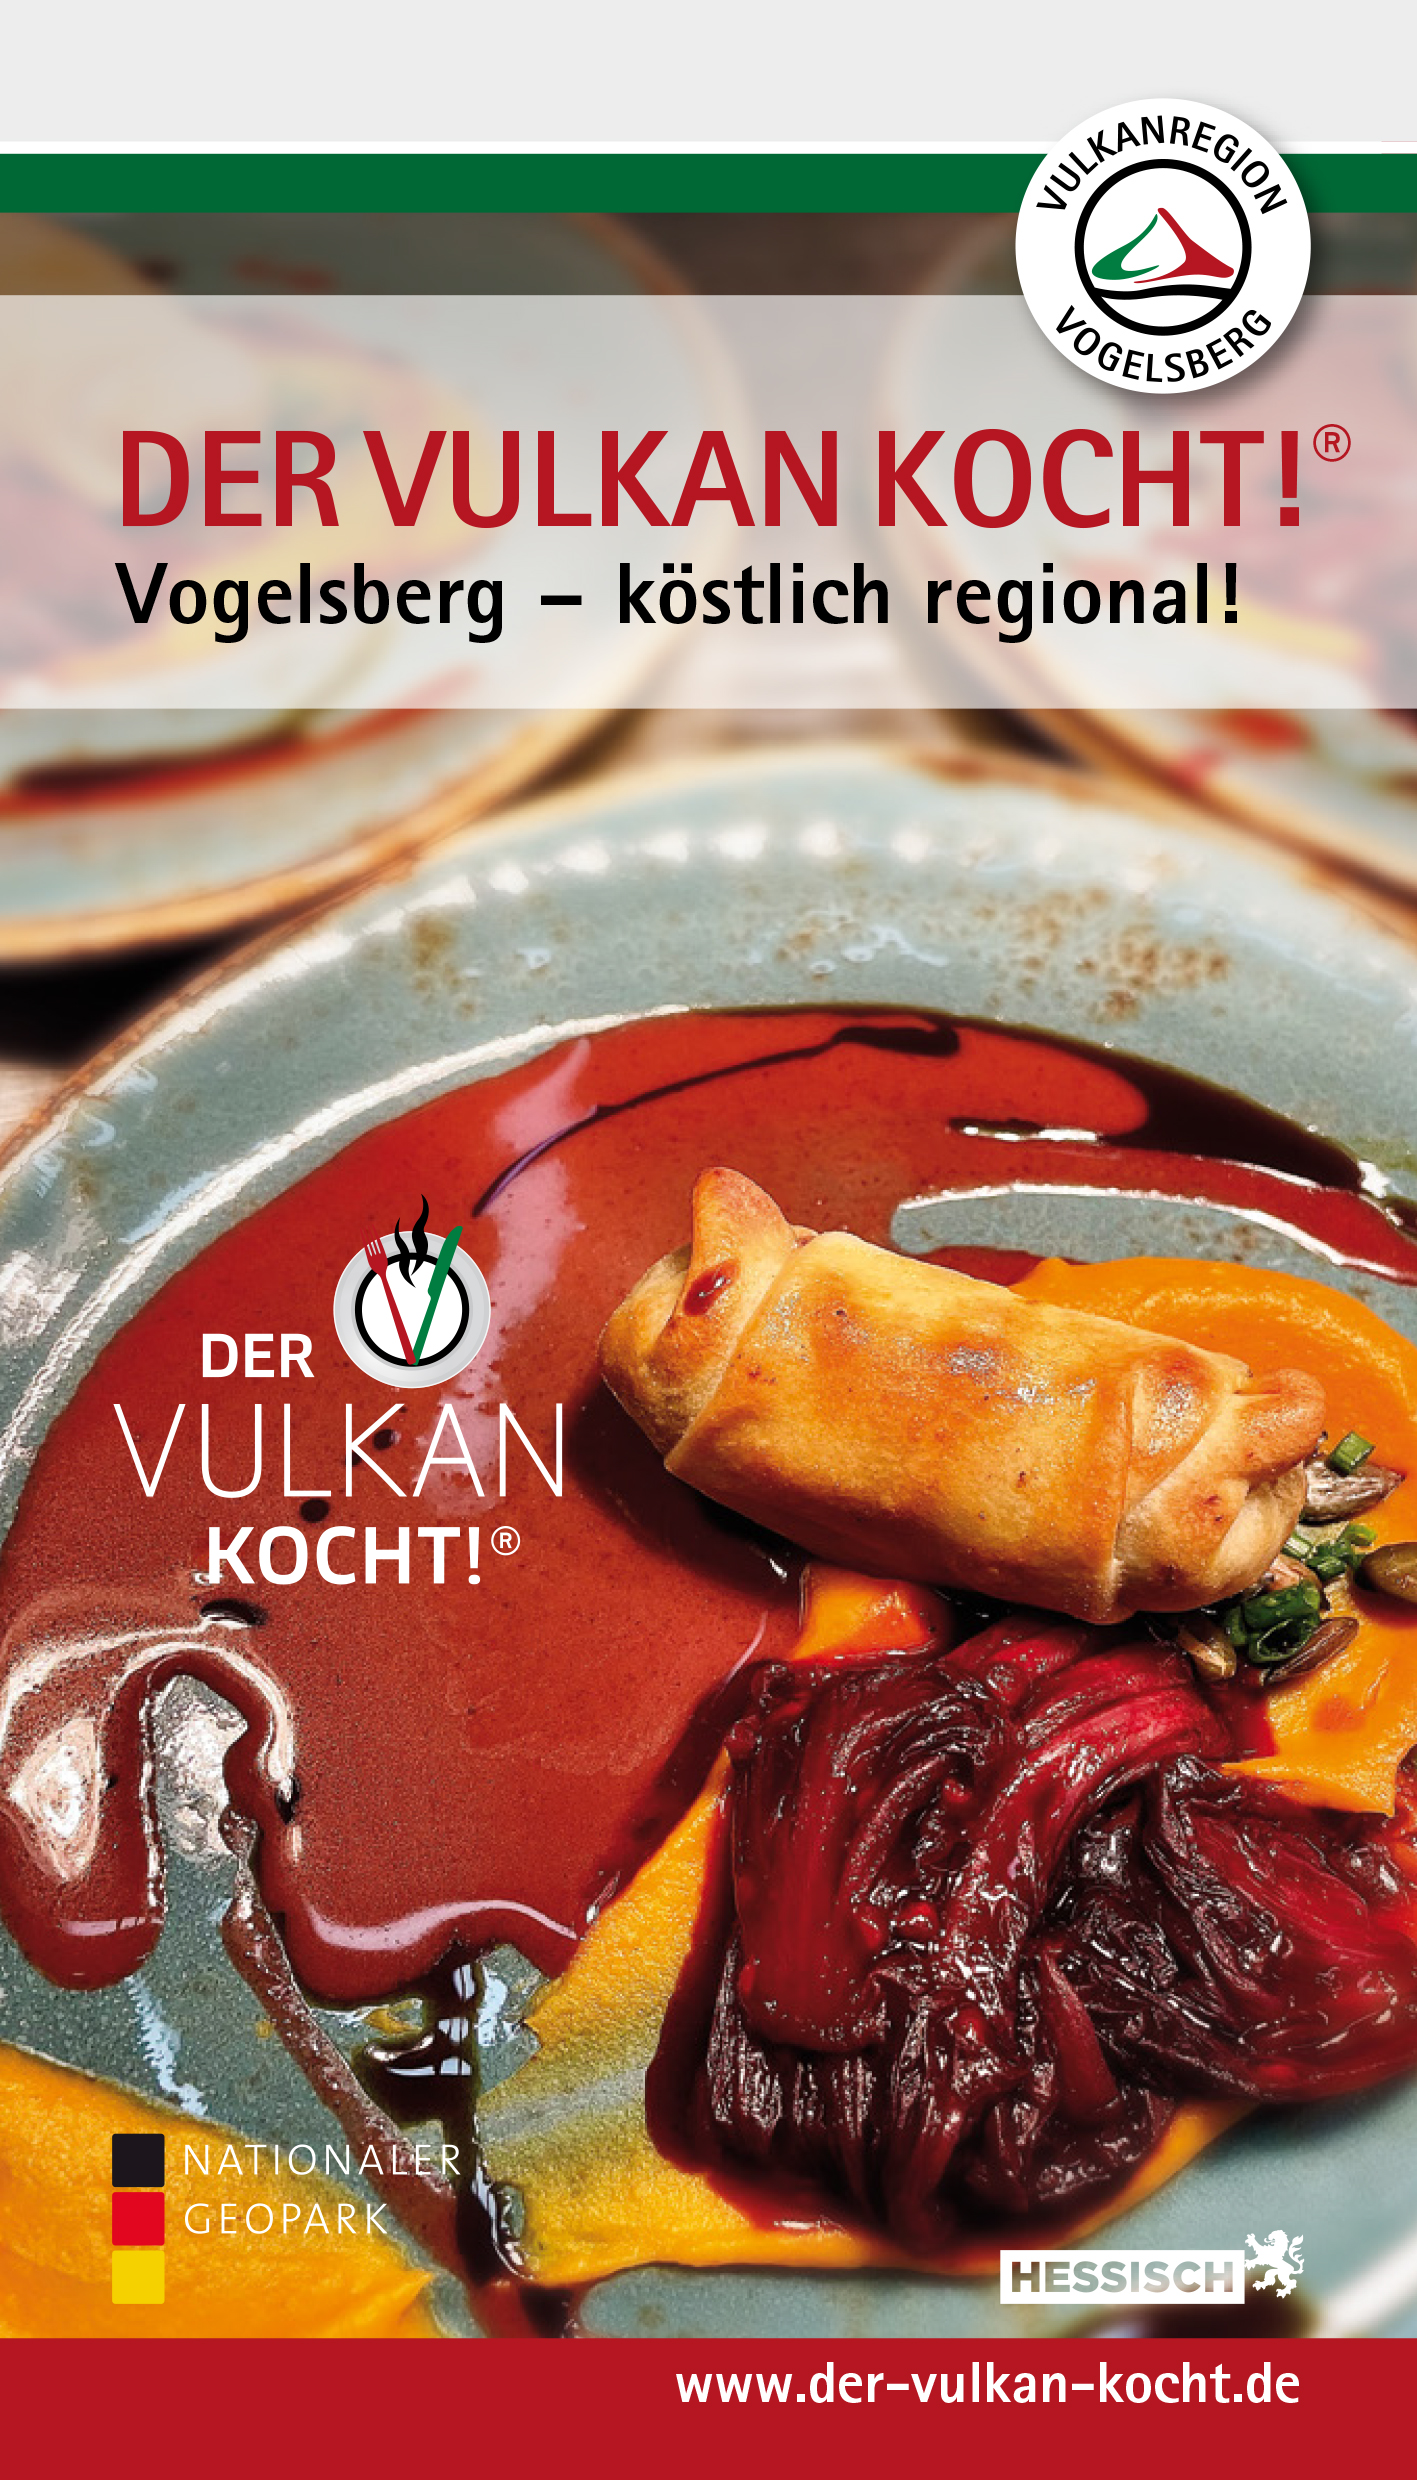 Der Vulkan kocht!® – Vogelsberg köstlich regional